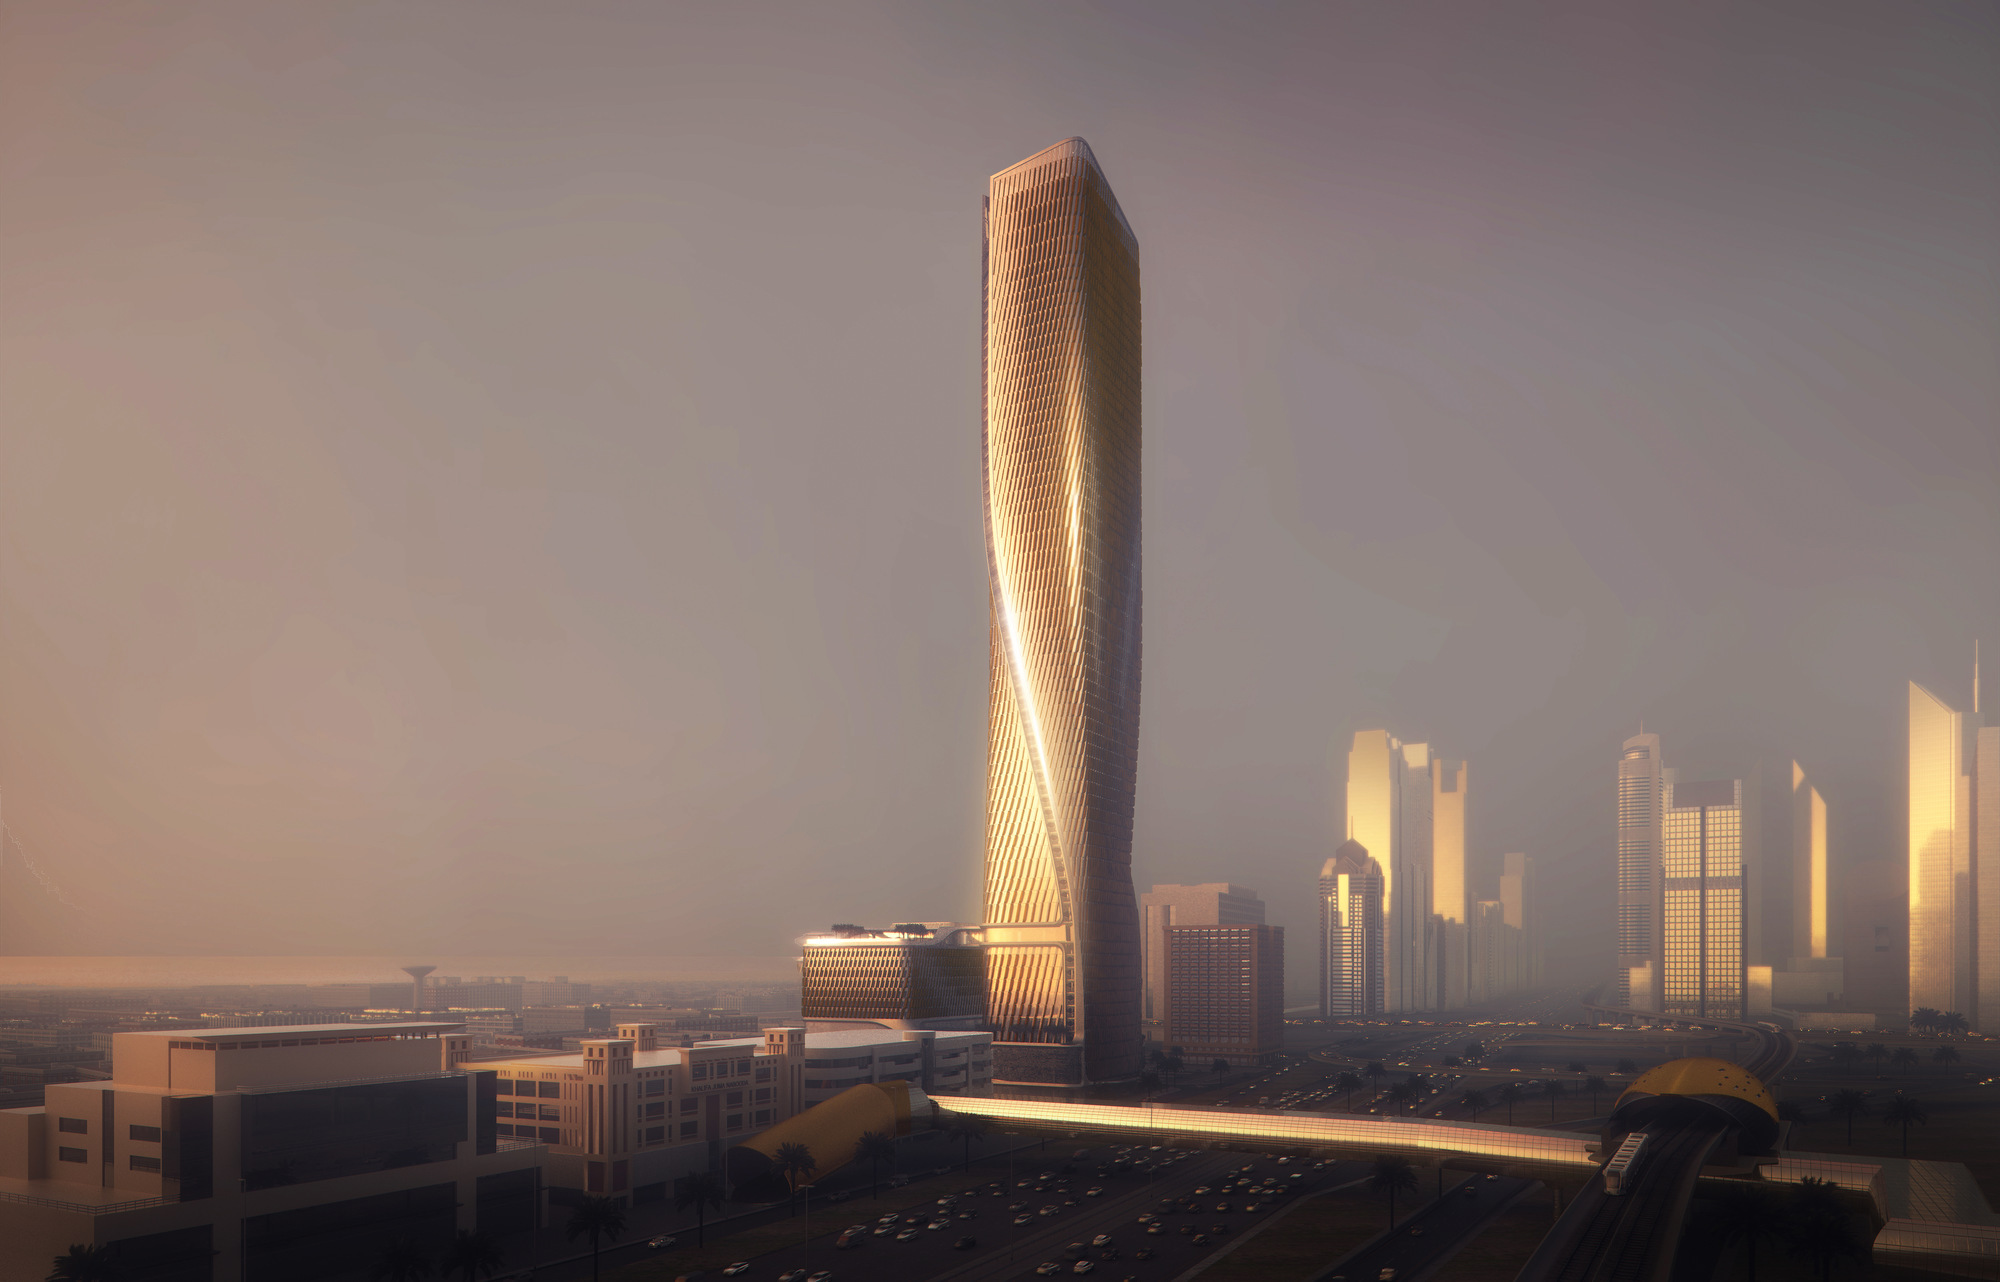 Wasl Tower in Dubai